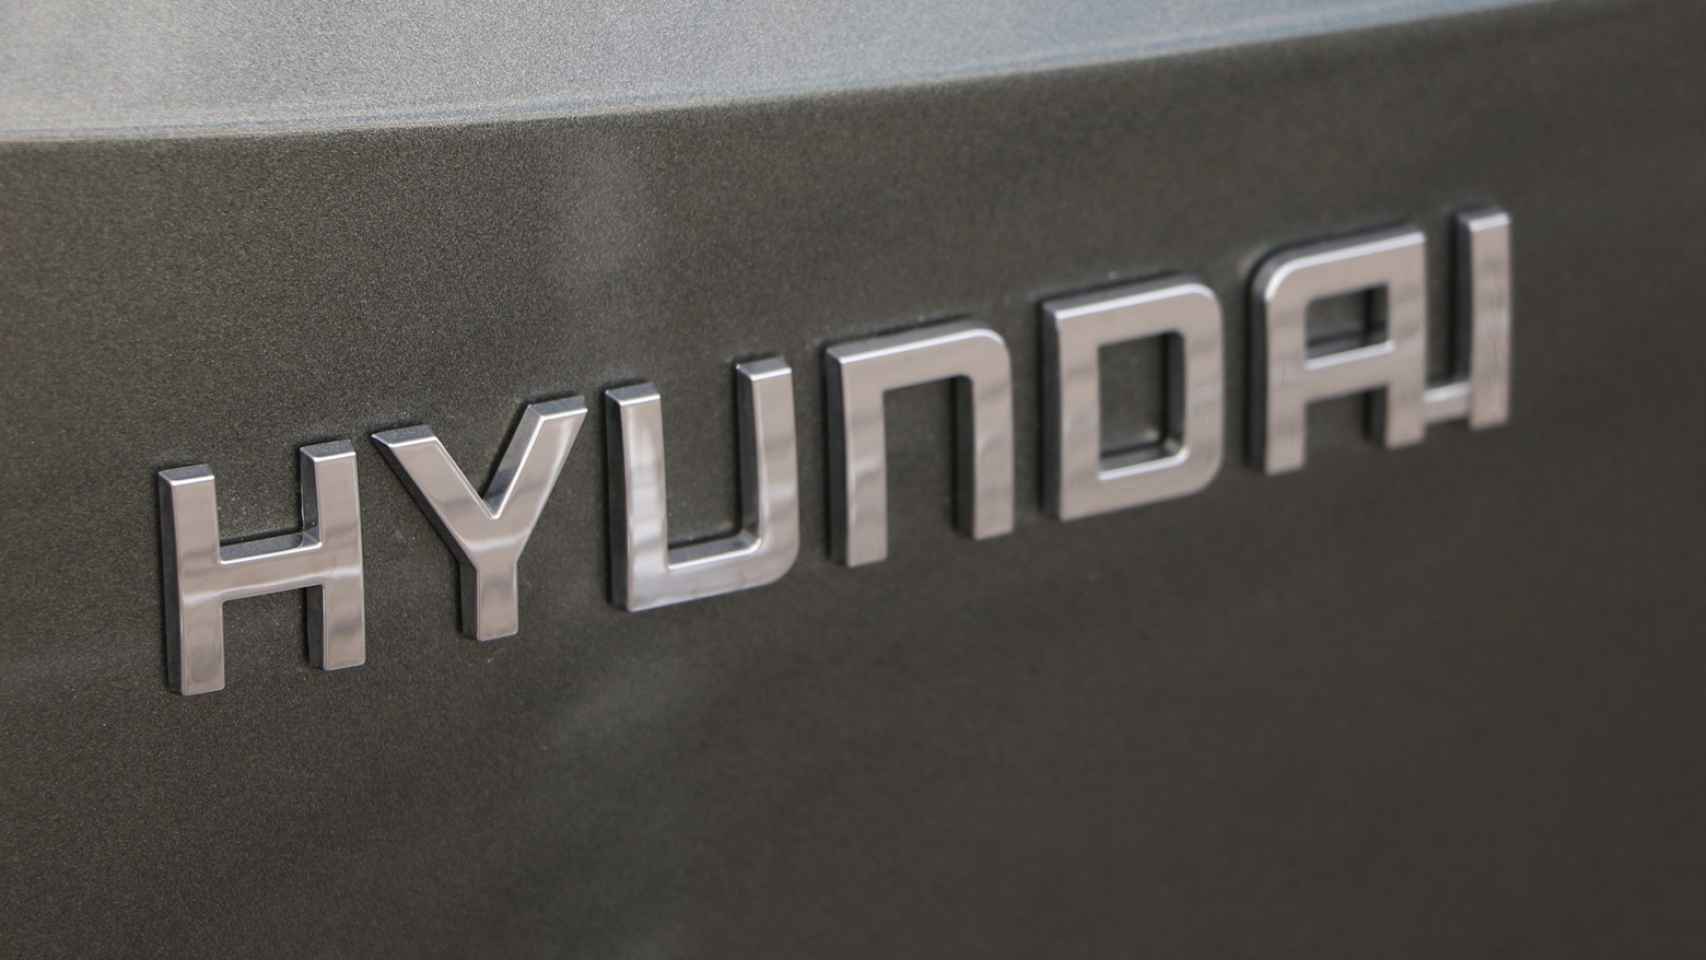 Hyundai espera llegar al 5,6% de cuota de mercado en 2021.